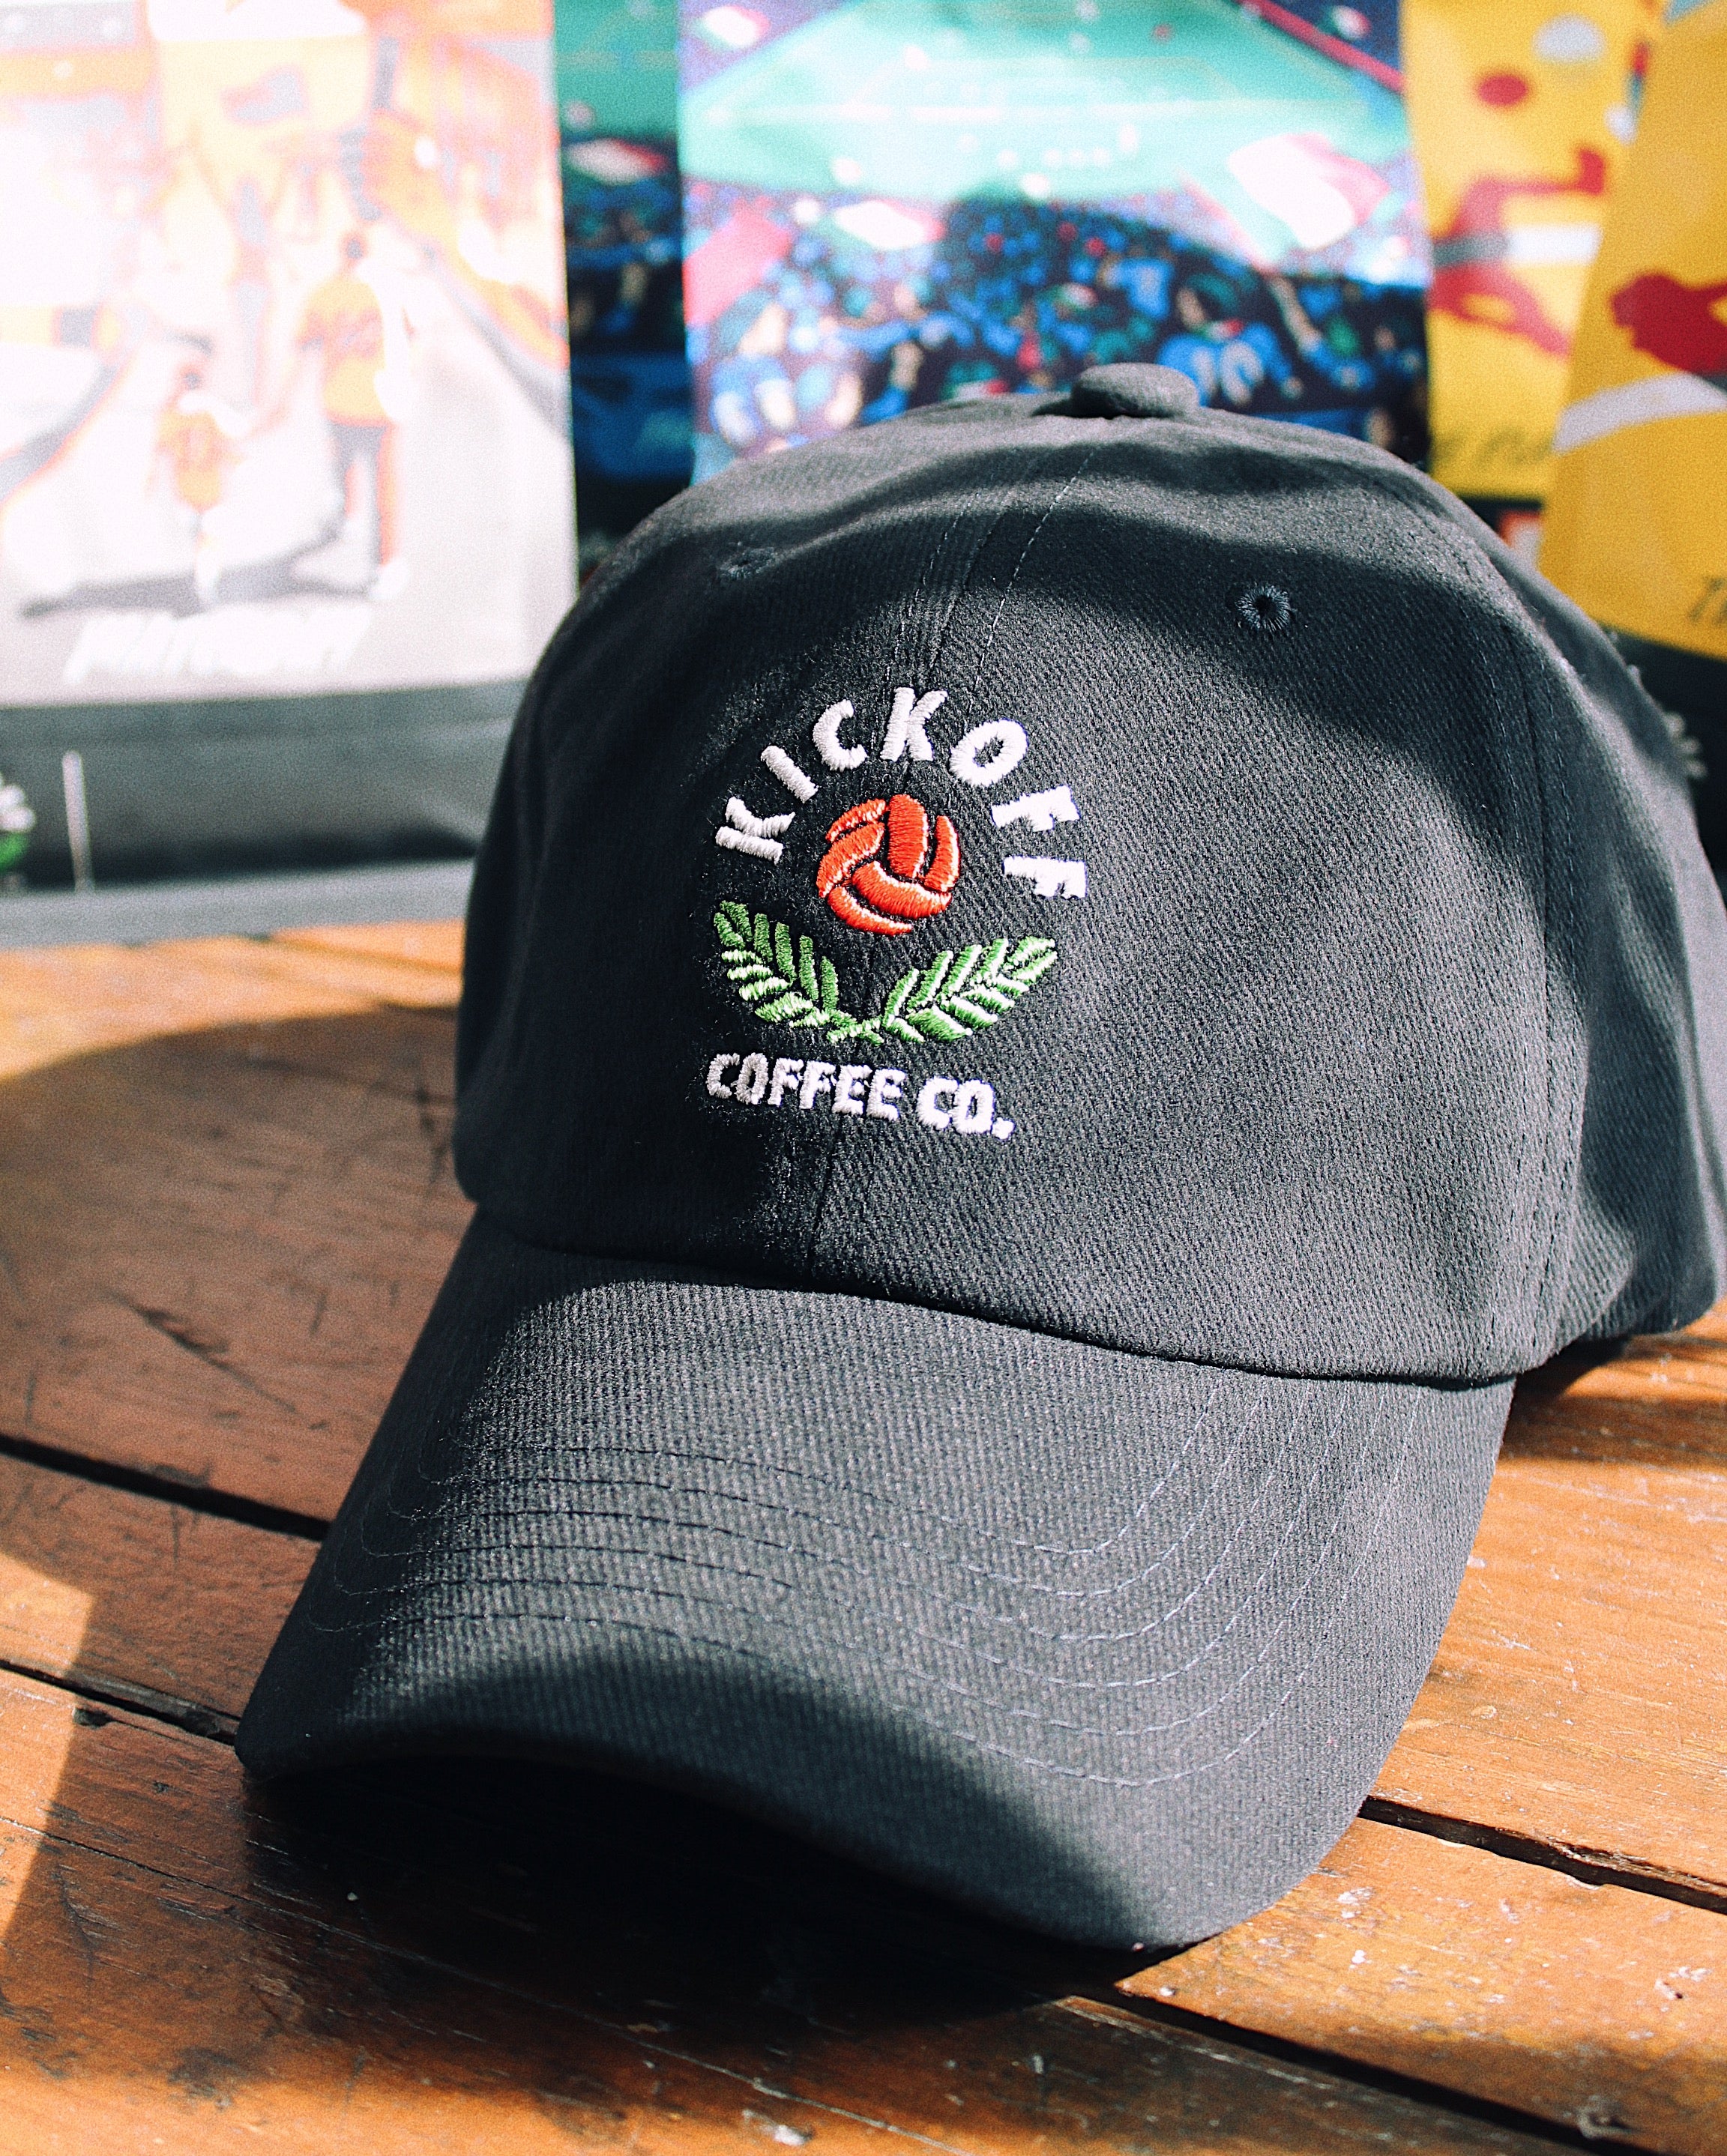 Kickoff Coffee x Talisman Cap